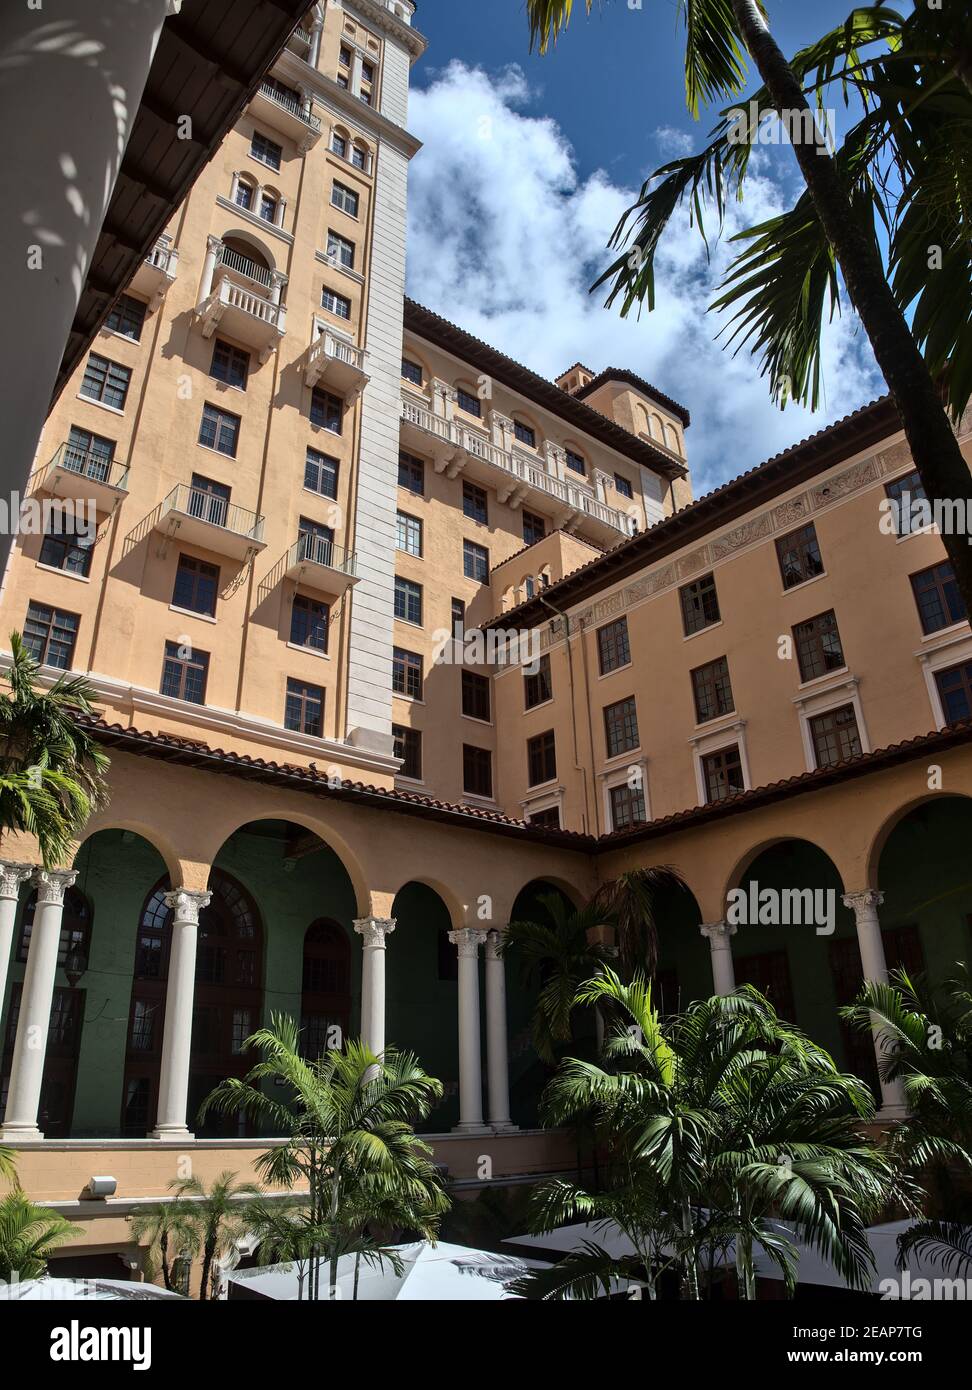 Coral Gables, Floride, États-Unis - 2020: Le Miami Biltmore Hotel, un hôtel de luxe historique construit en 1926, a désigné un site historique national en 1996. Banque D'Images